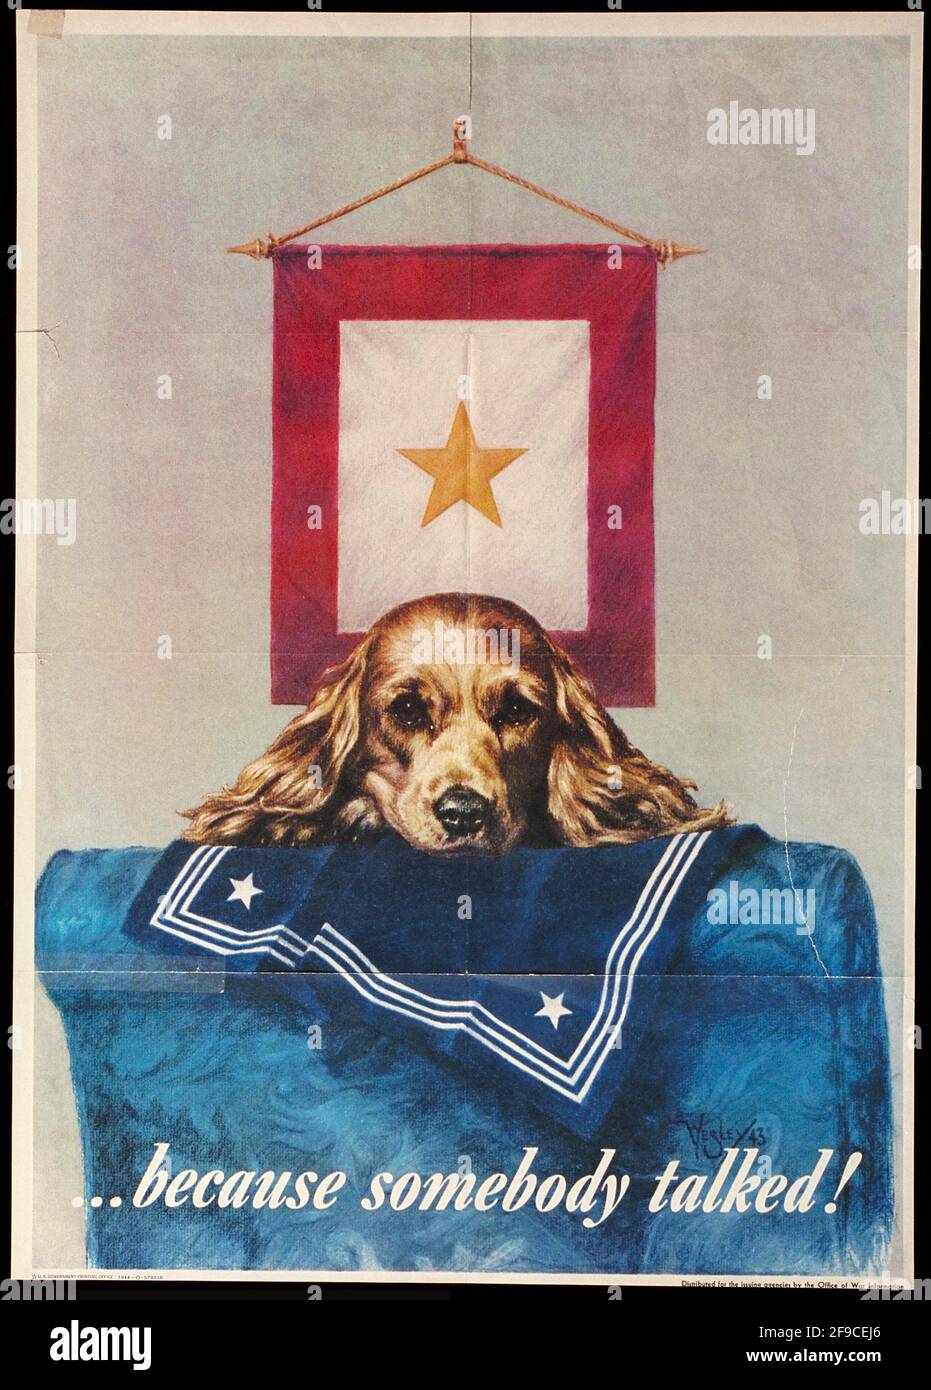 Un poster vintage della seconda guerra mondiale che avverte il pubblico dei pericoli di parlare senza cura Foto Stock